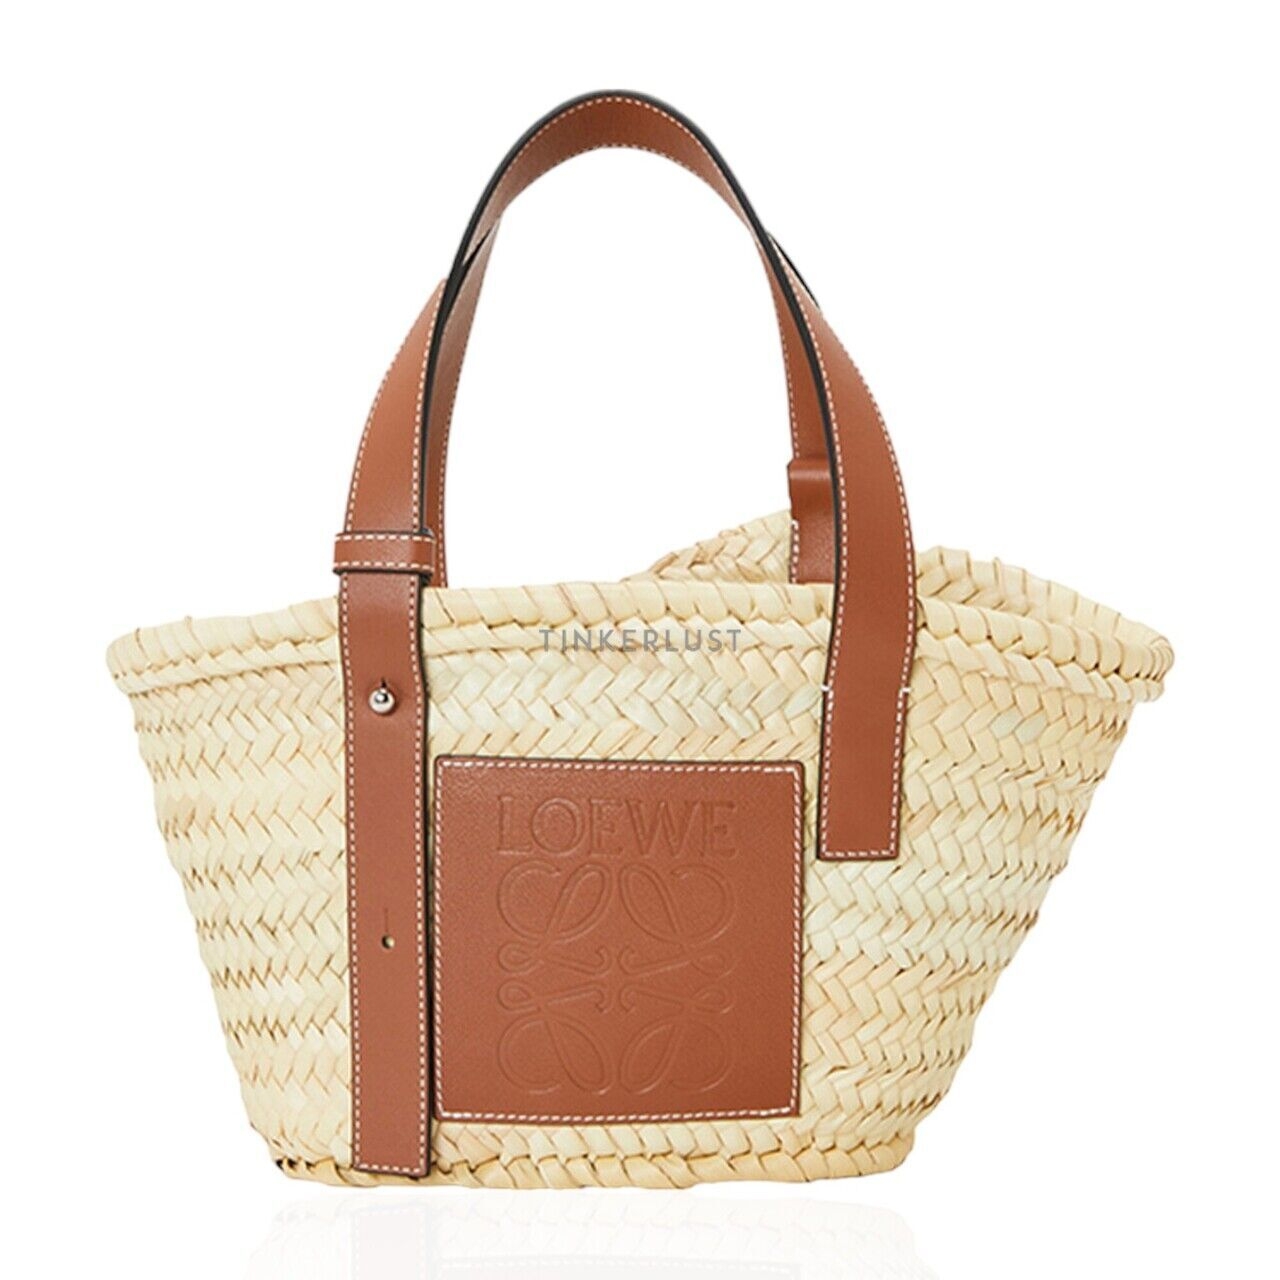 Loewe Small Basket Top Handle Bag in Natural/Tan Handbag